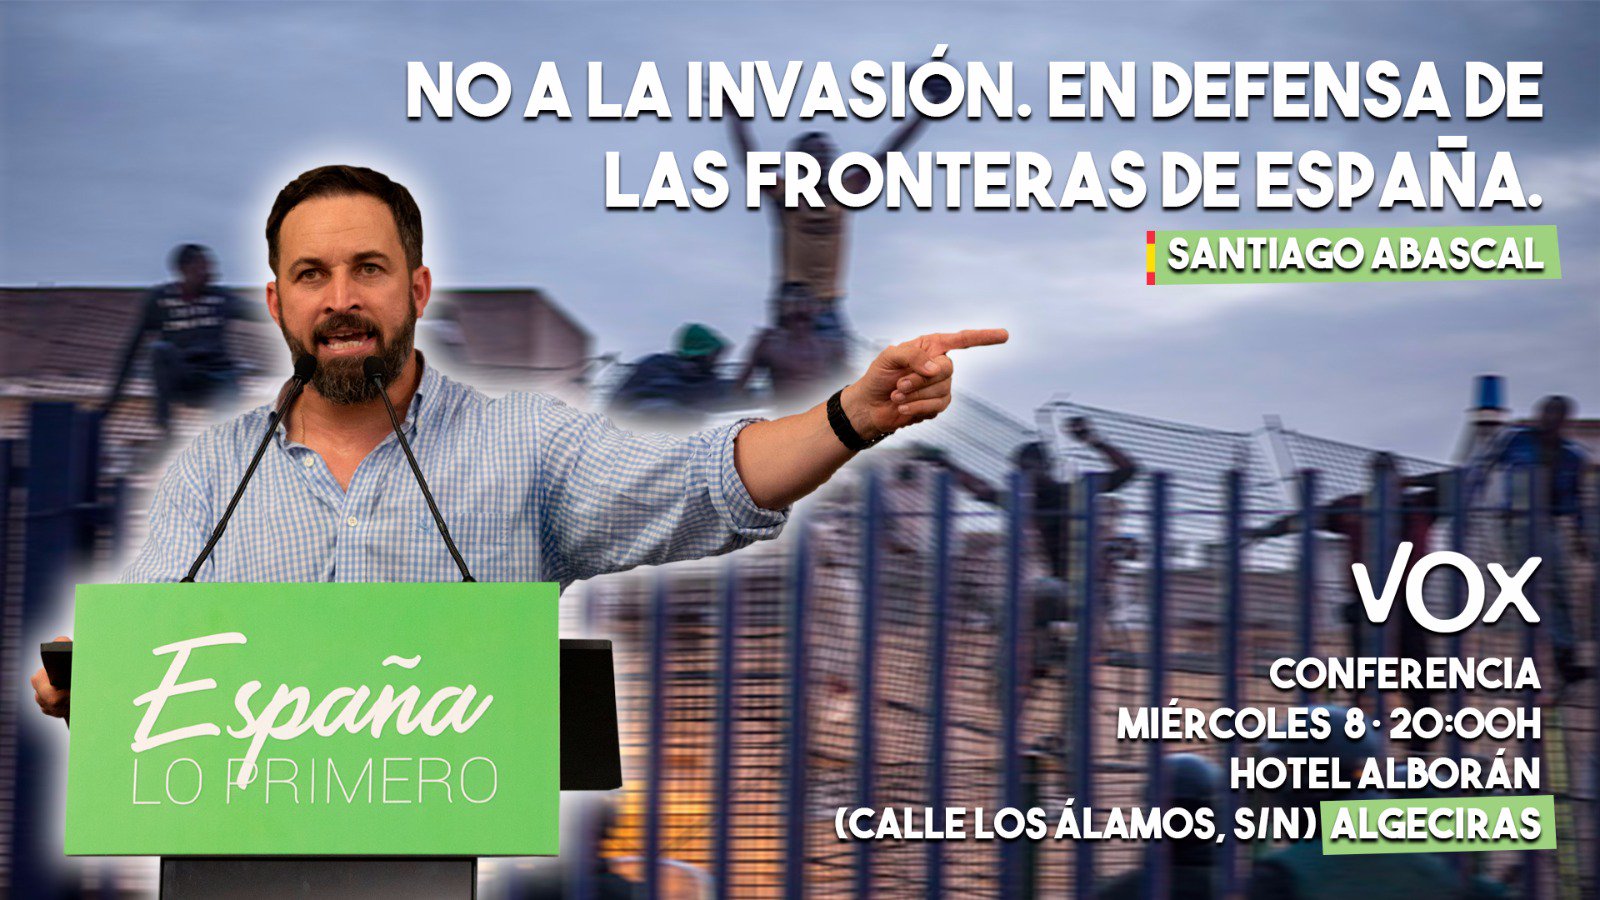 Cartel elaborado por Vox de acto en favor a la defensa de las fronteras de España, 2018. Imagen: Twitter.